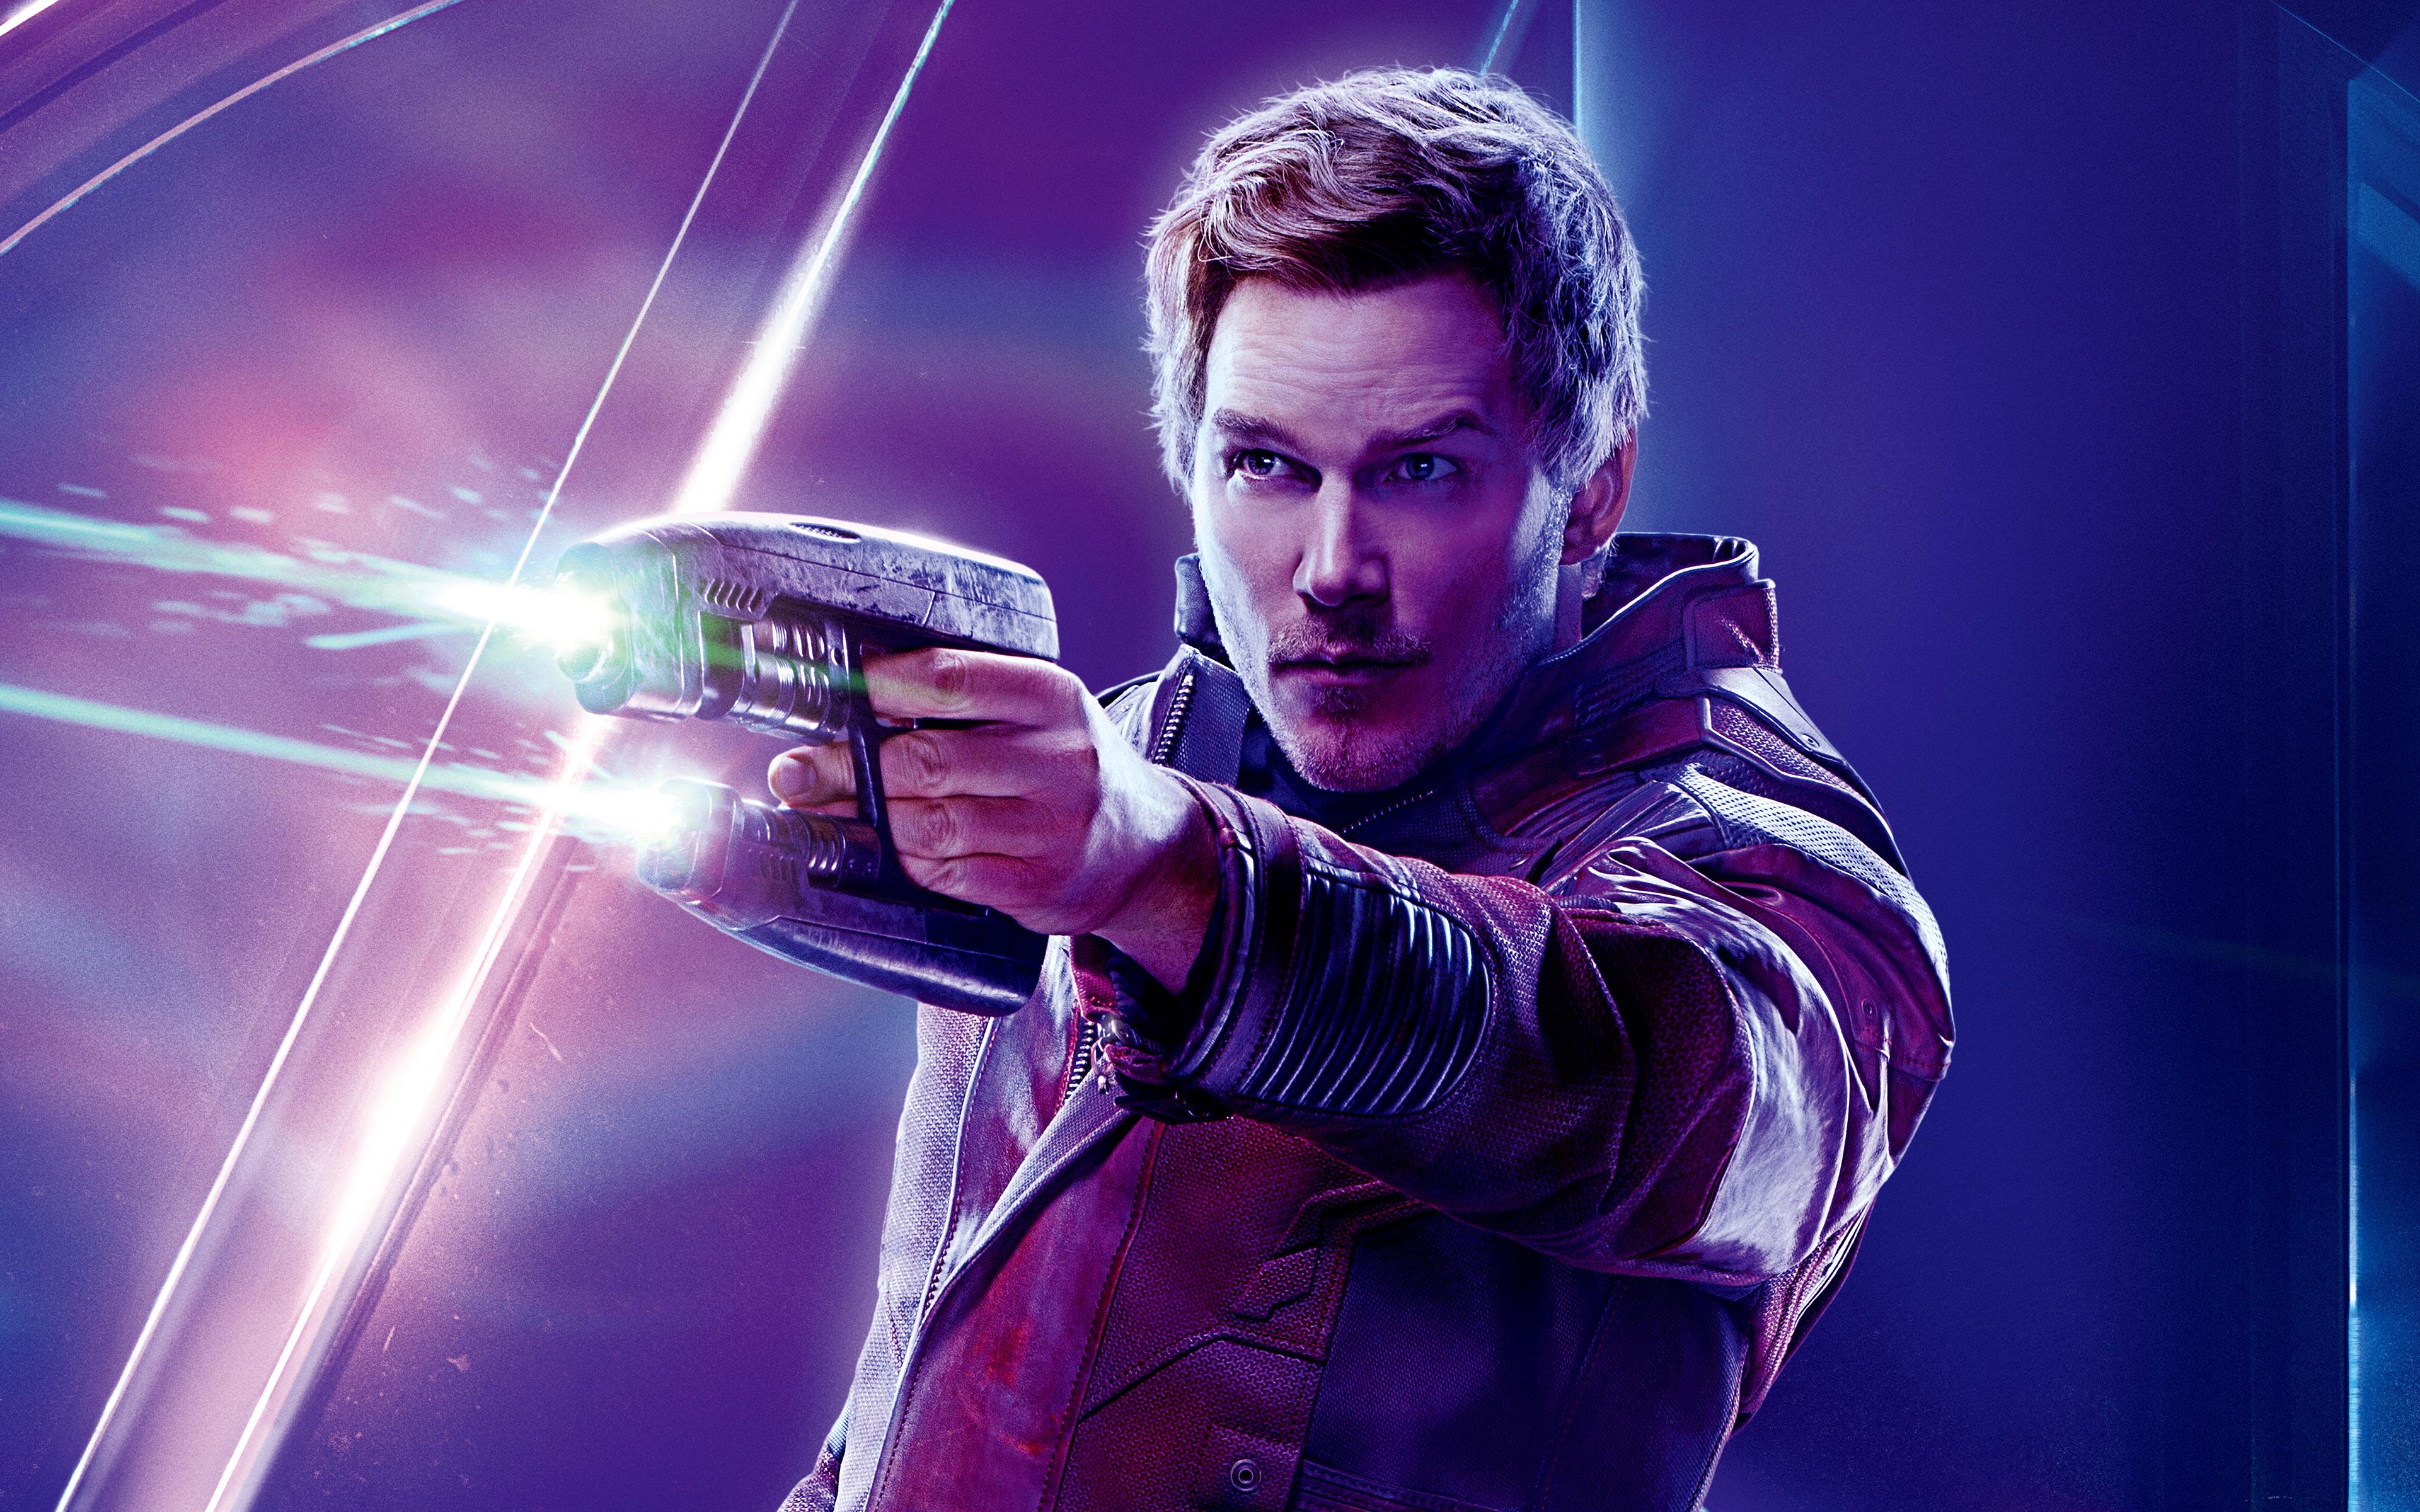 Star Lord in Avengers Infinity War 4K 8K Wallpaper. HD